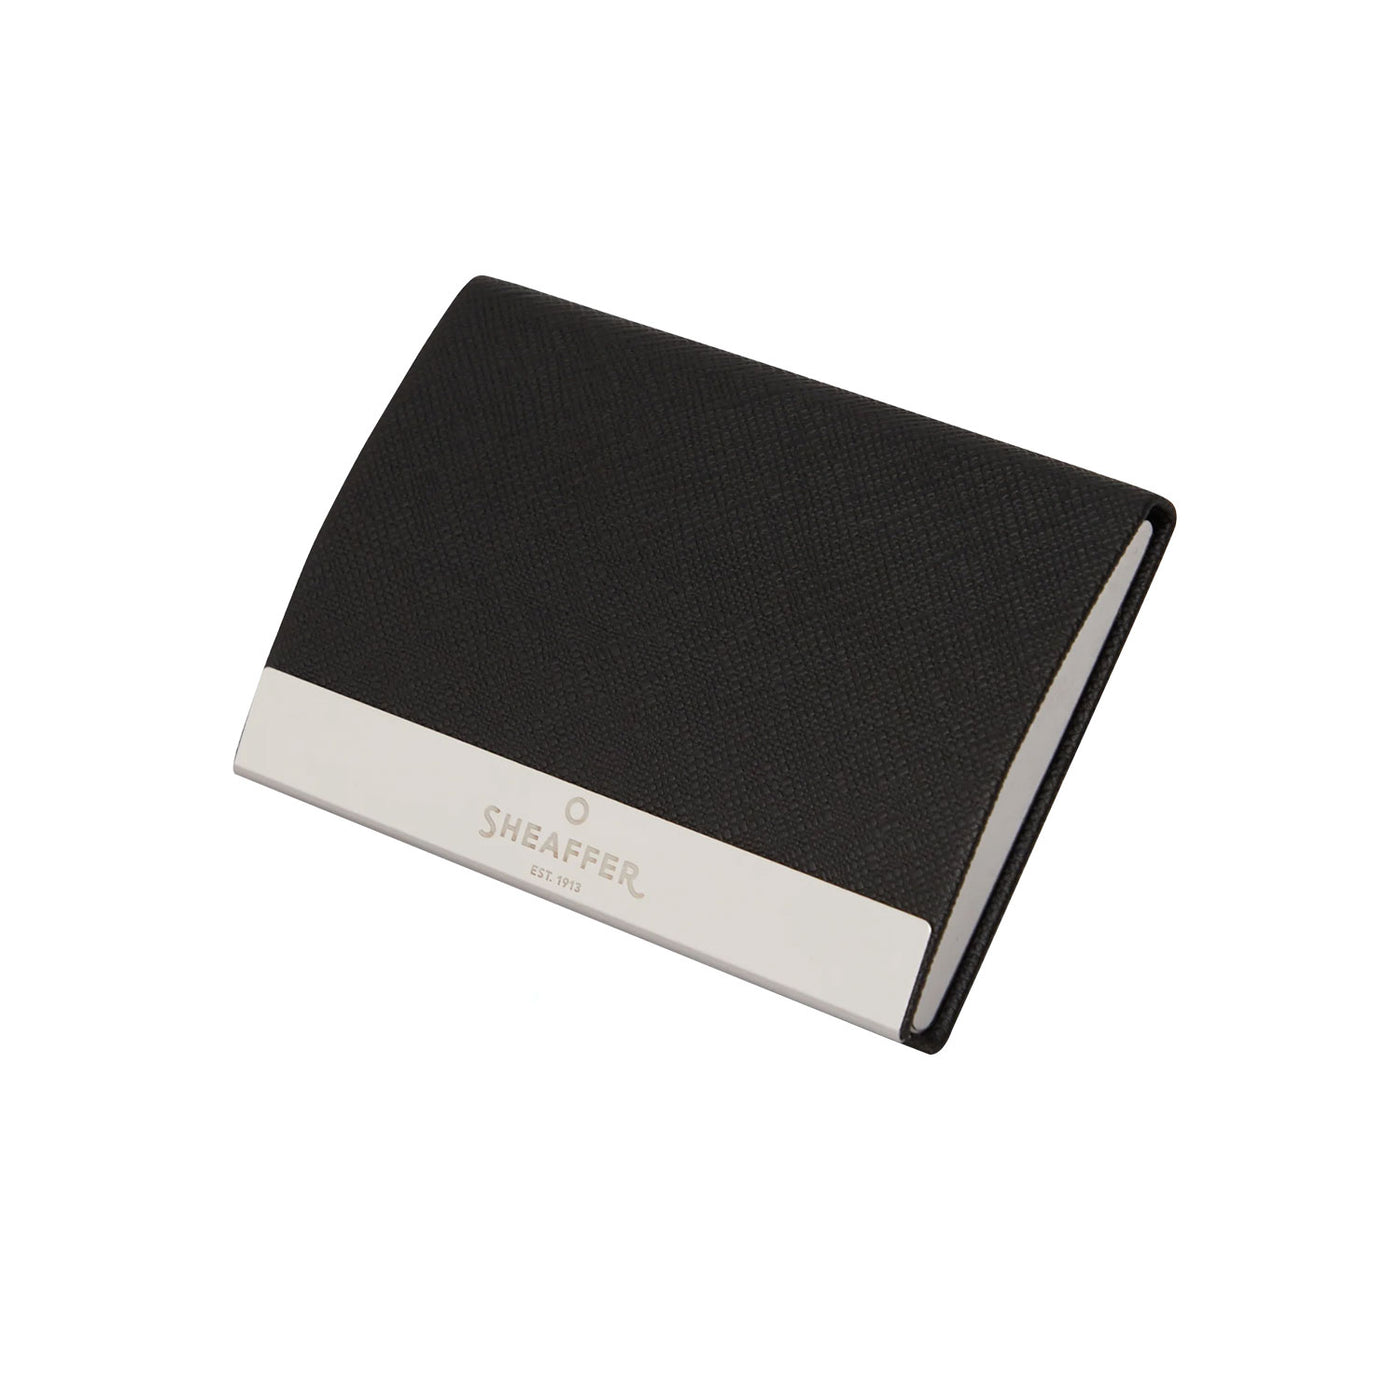 Sheaffer Gift Set - 300 Series Matte Black BT Ball Pen with Business Card Holder 5